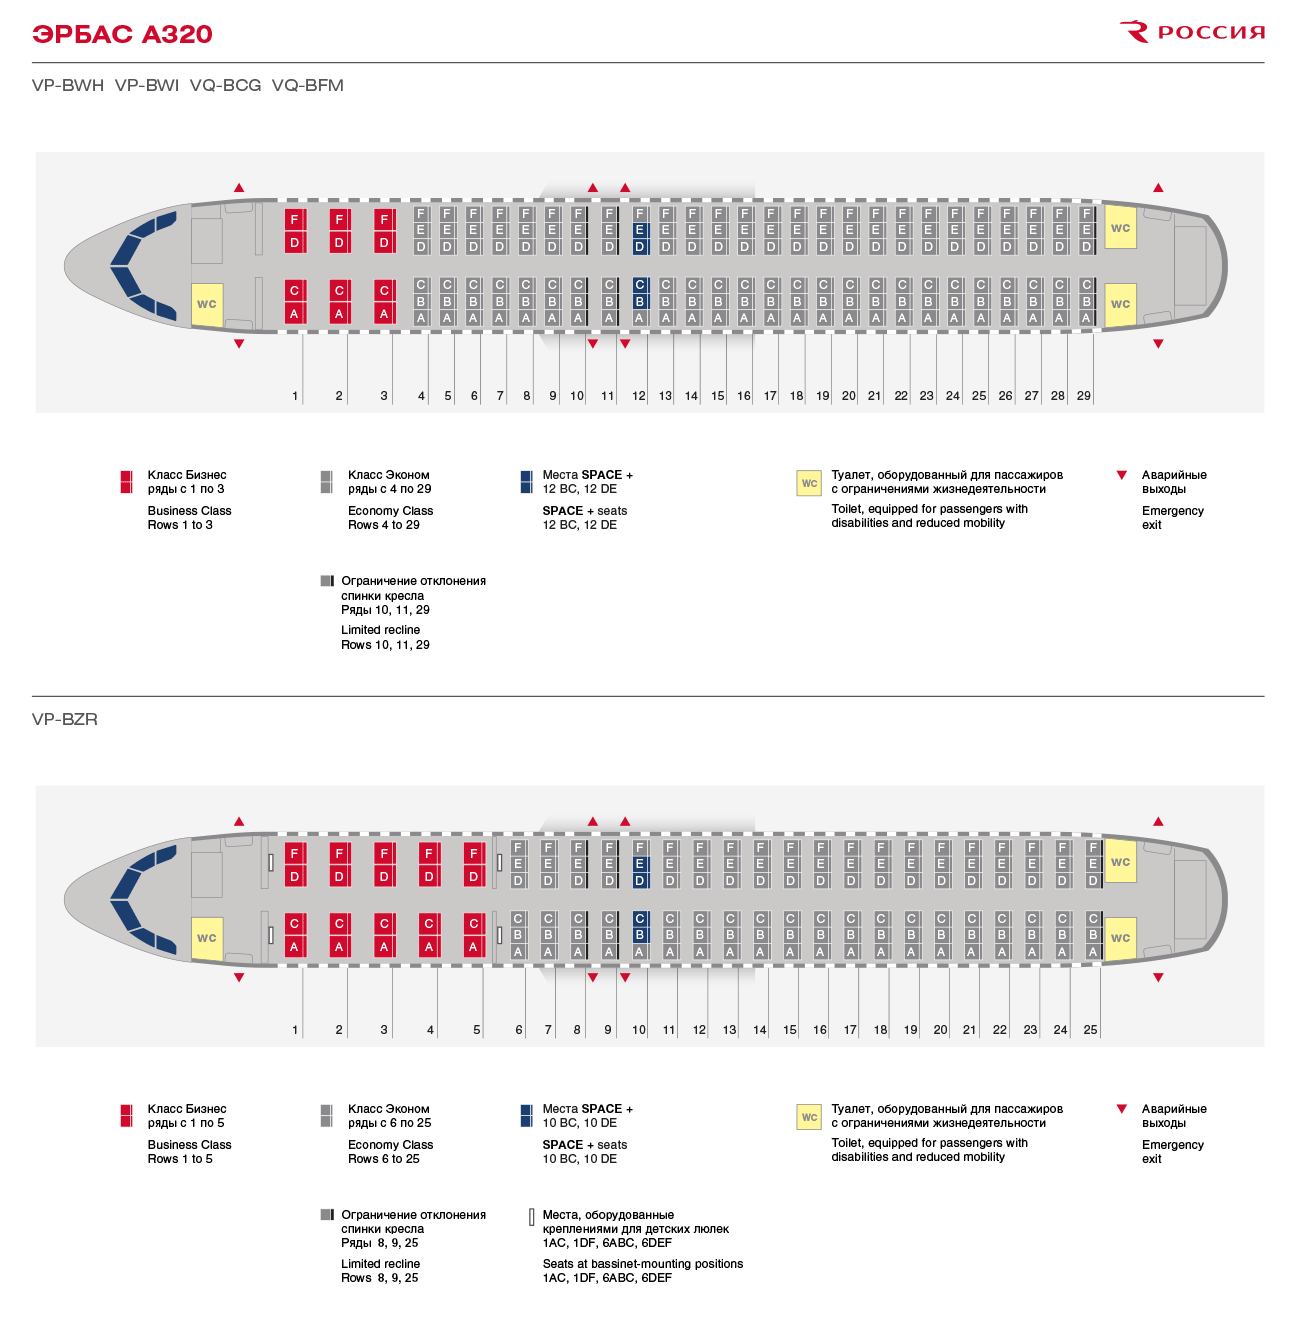 空客20n机型座位图图片